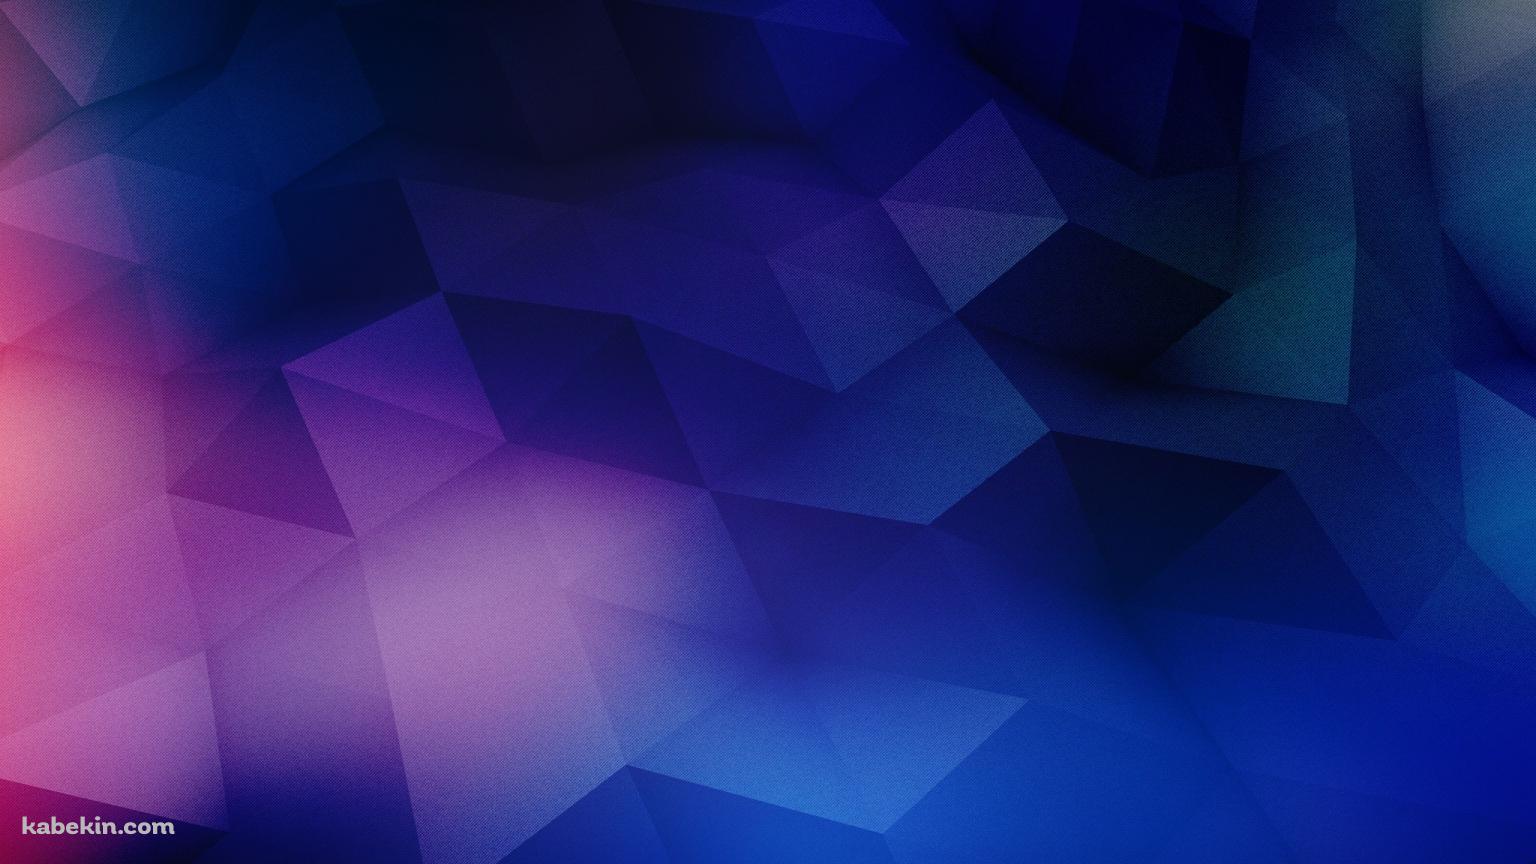 青と紫のポリゴンパターンの壁紙(1536px x 864px) 高画質 PC・デスクトップ用